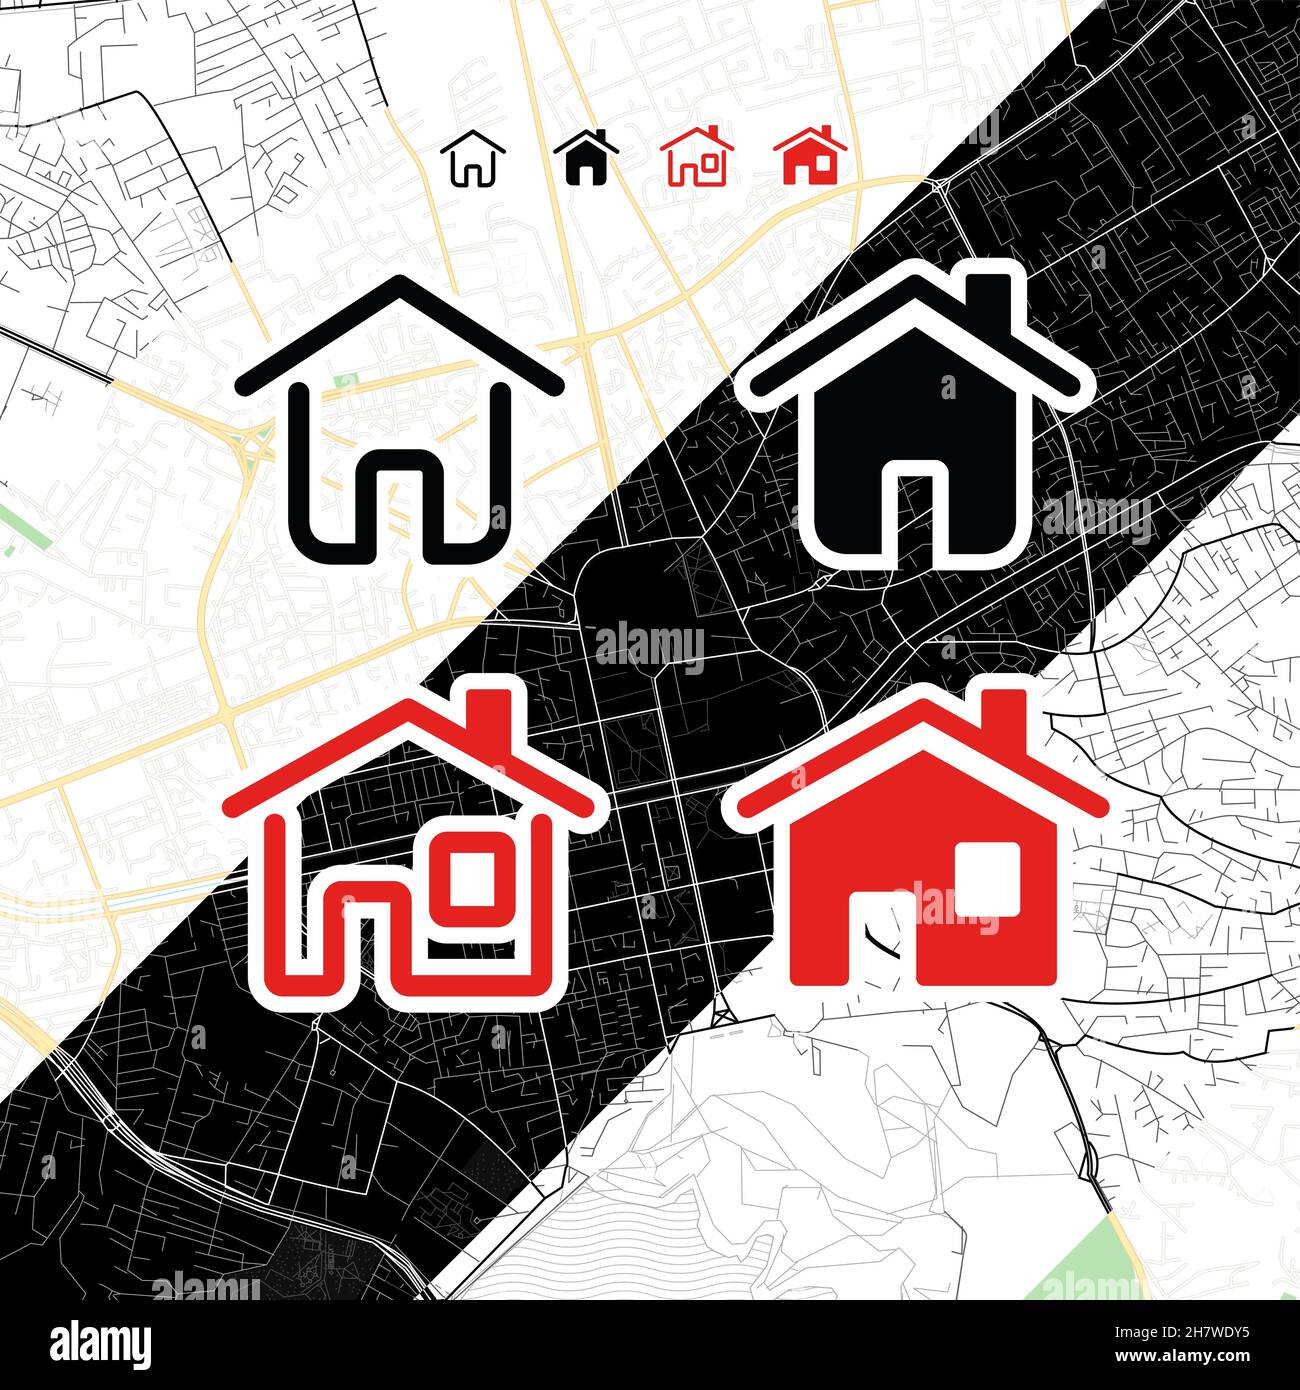 Collezione di icone Home House su Vector Map Illustrazione vettoriale. Icone comuni per la progettazione su sfondi chiari e scuri diversi. Icone vettoriali Grou Illustrazione Vettoriale